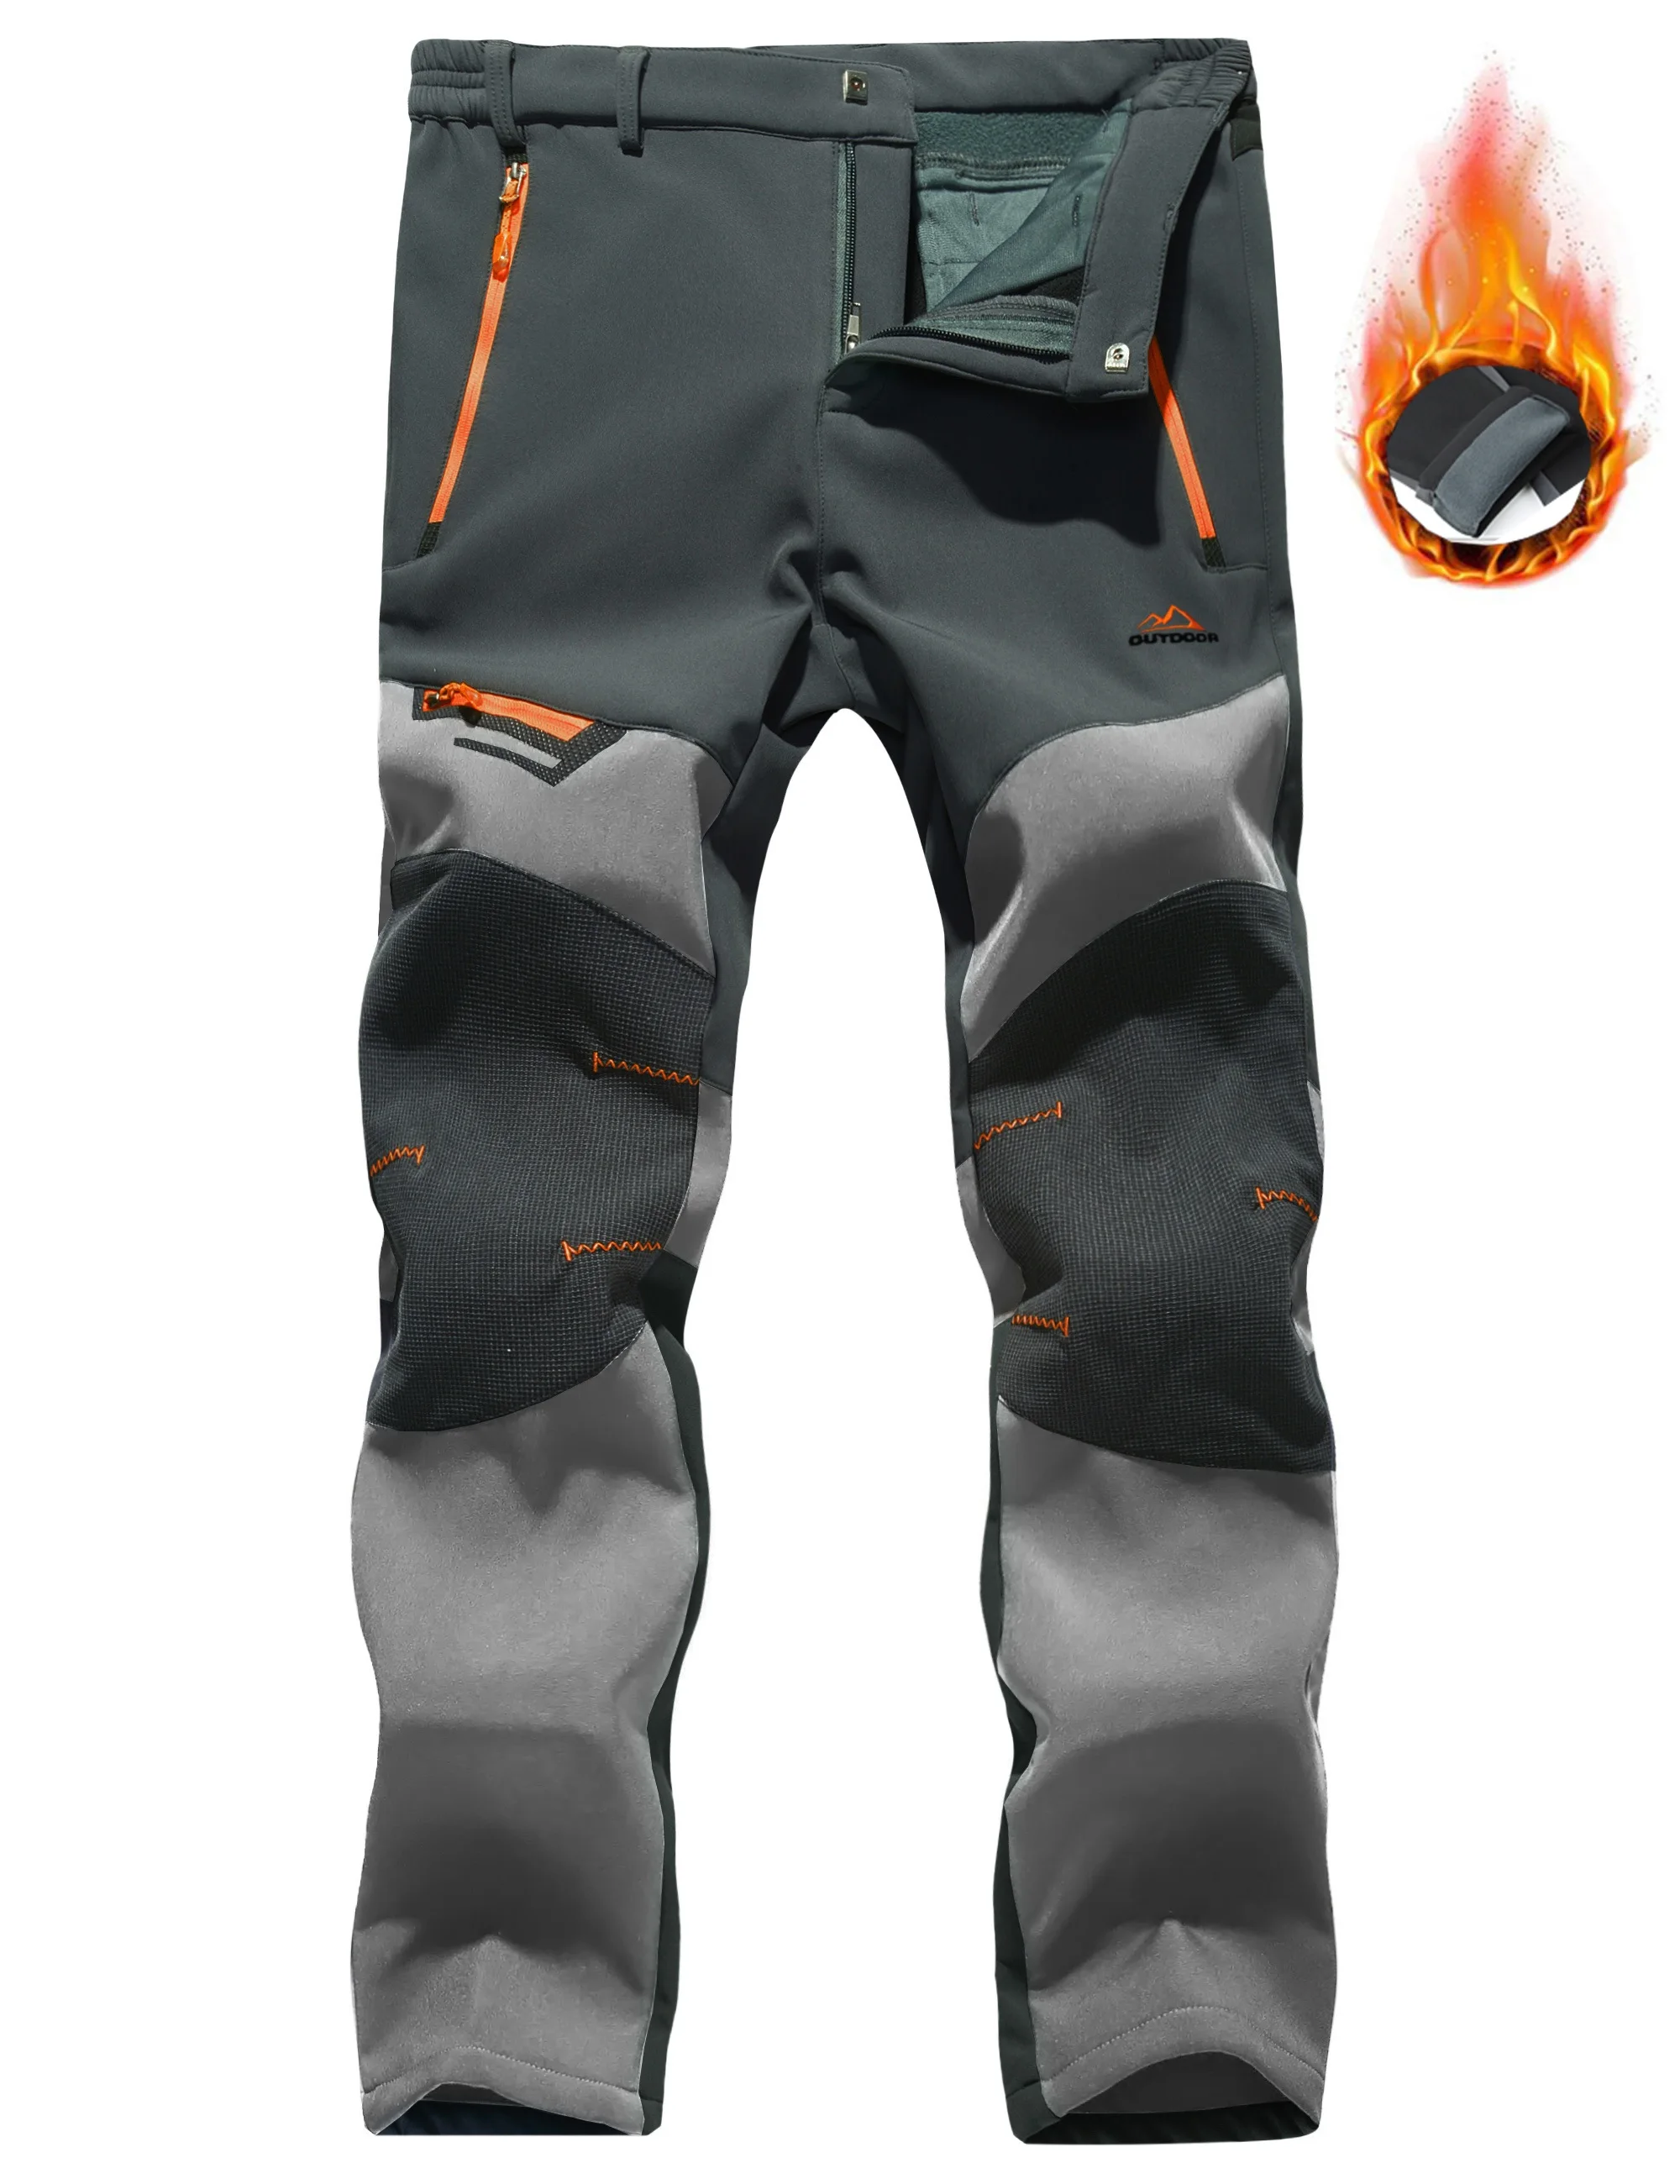 black khaki pants TACVASEN 4 Season Breathable Mens Tactical Pants Fishing Hiking Camping Waterproof No Fleece Pants Zipper Pocket Casual Trousers casual cargo pants Casual Pants